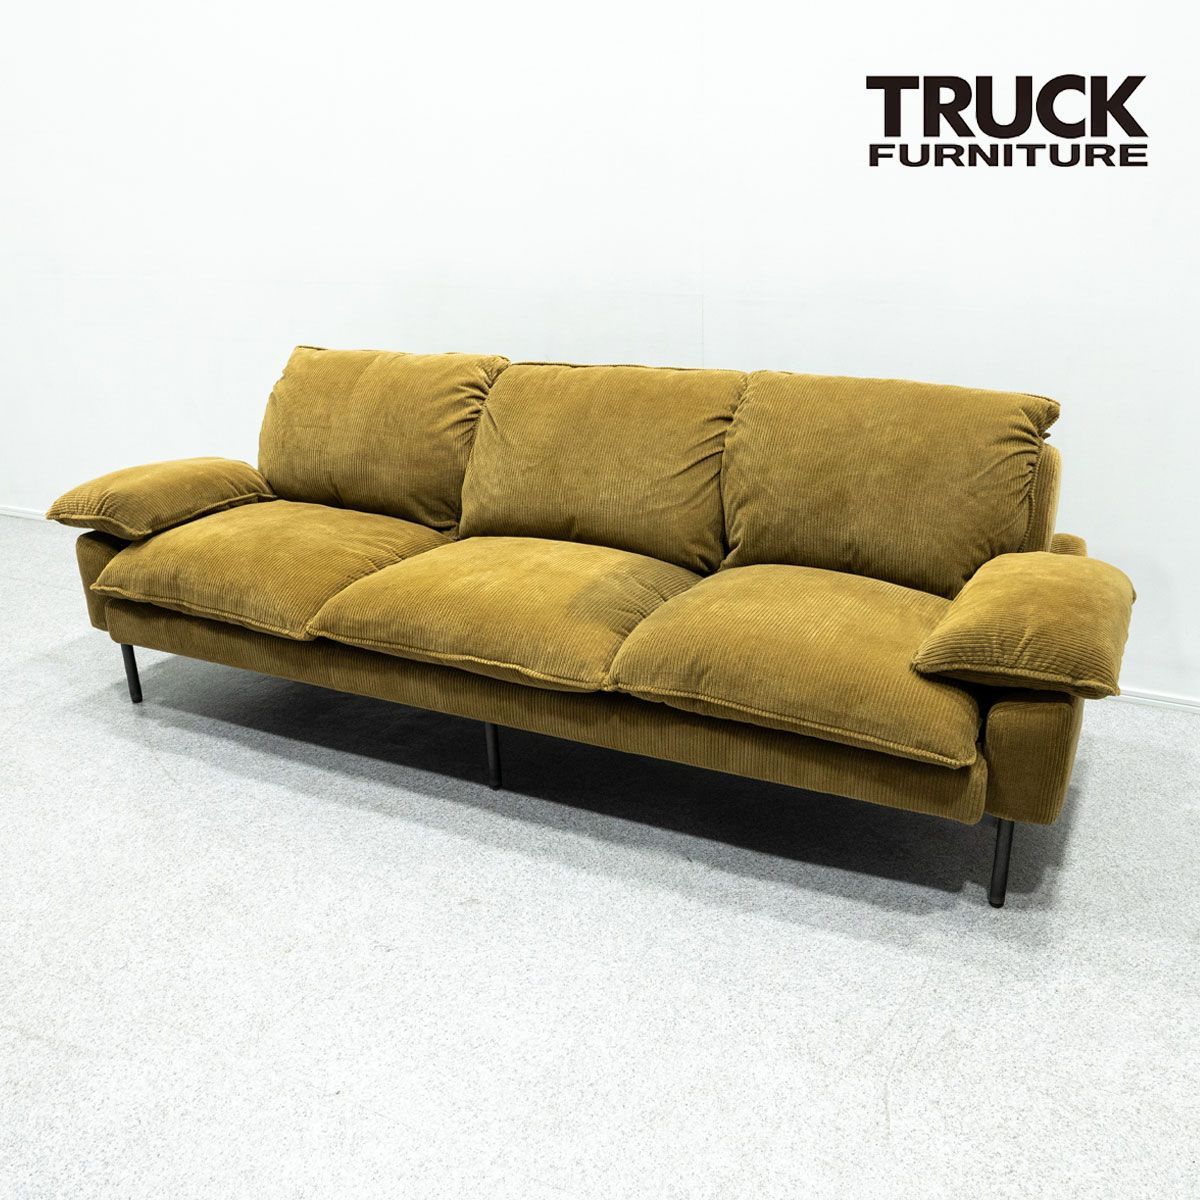 トラックファニチャー TRUCK furniture TORCH Sofa - ソファ/ソファベッド